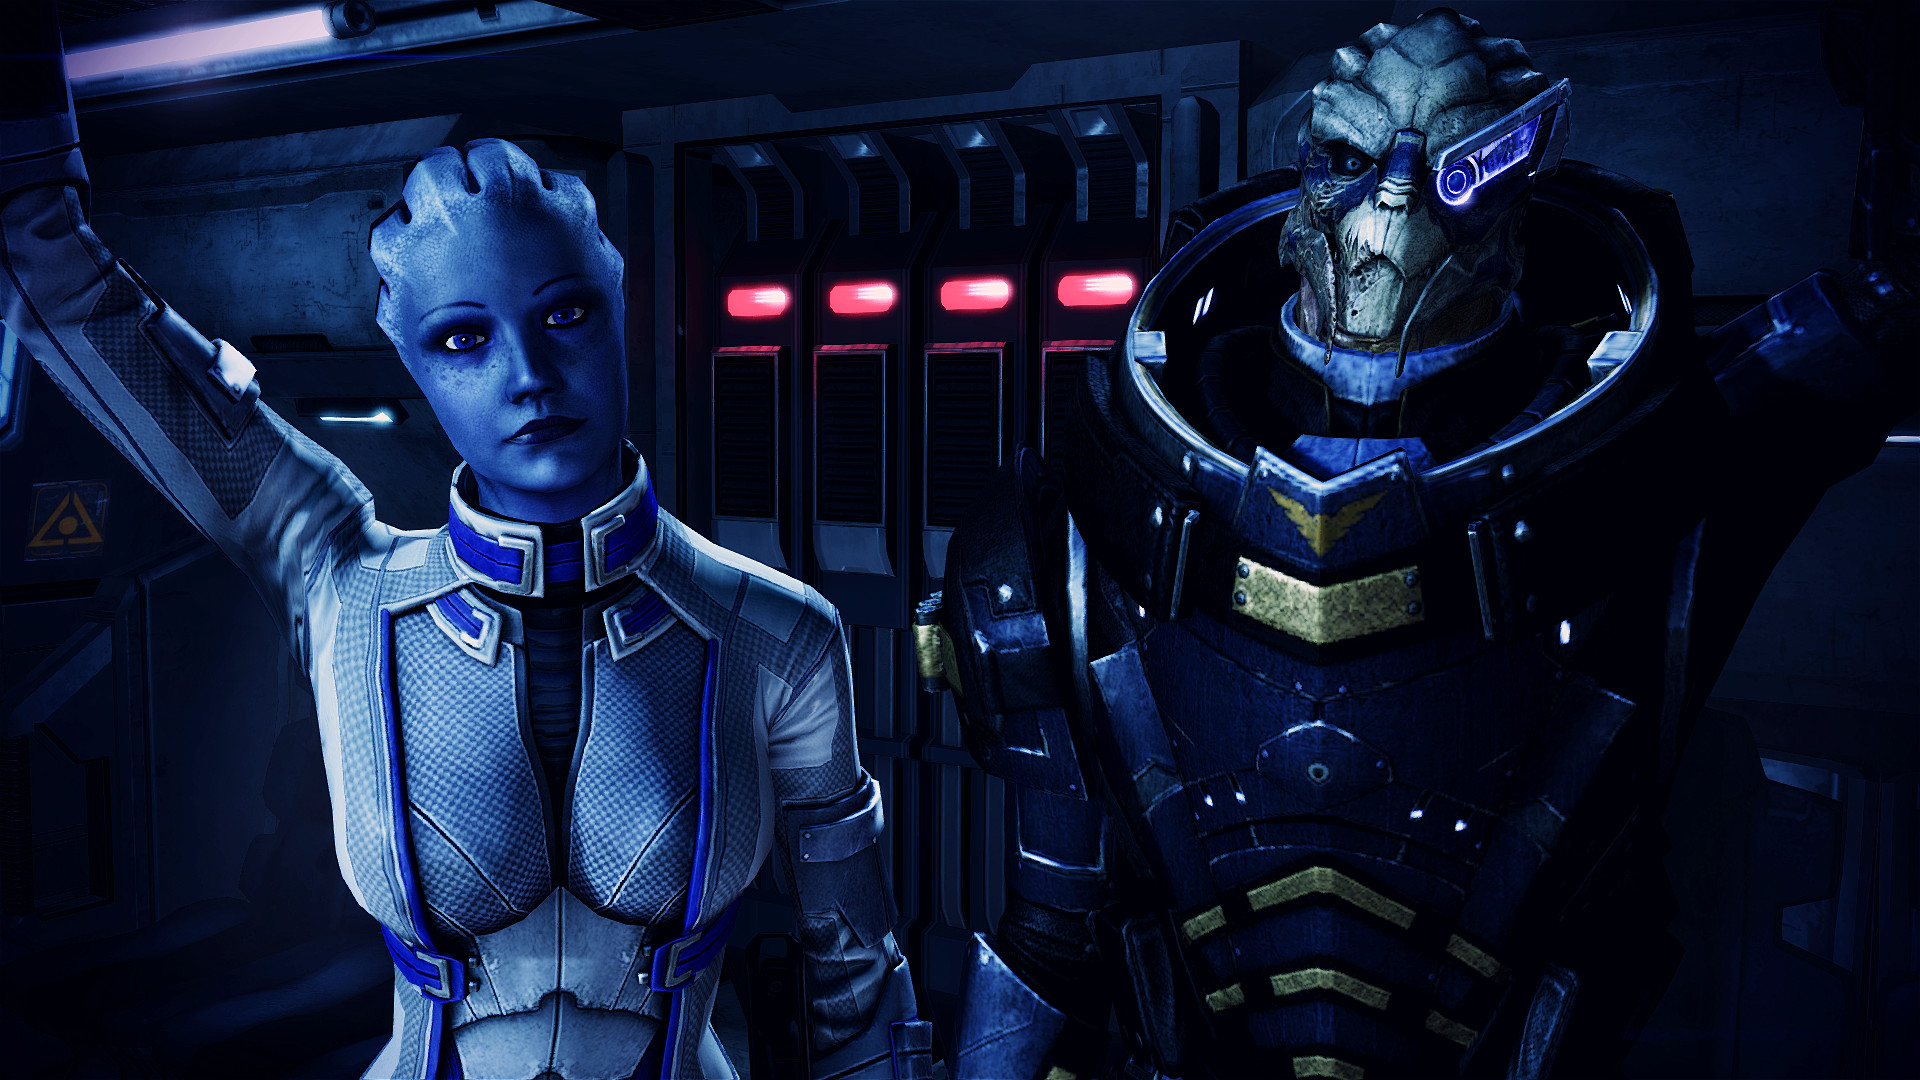 Descarga gratuita de fondo de pantalla para móvil de Garrus Vakarian, Liara T'soni, Mass Effect, Videojuego.